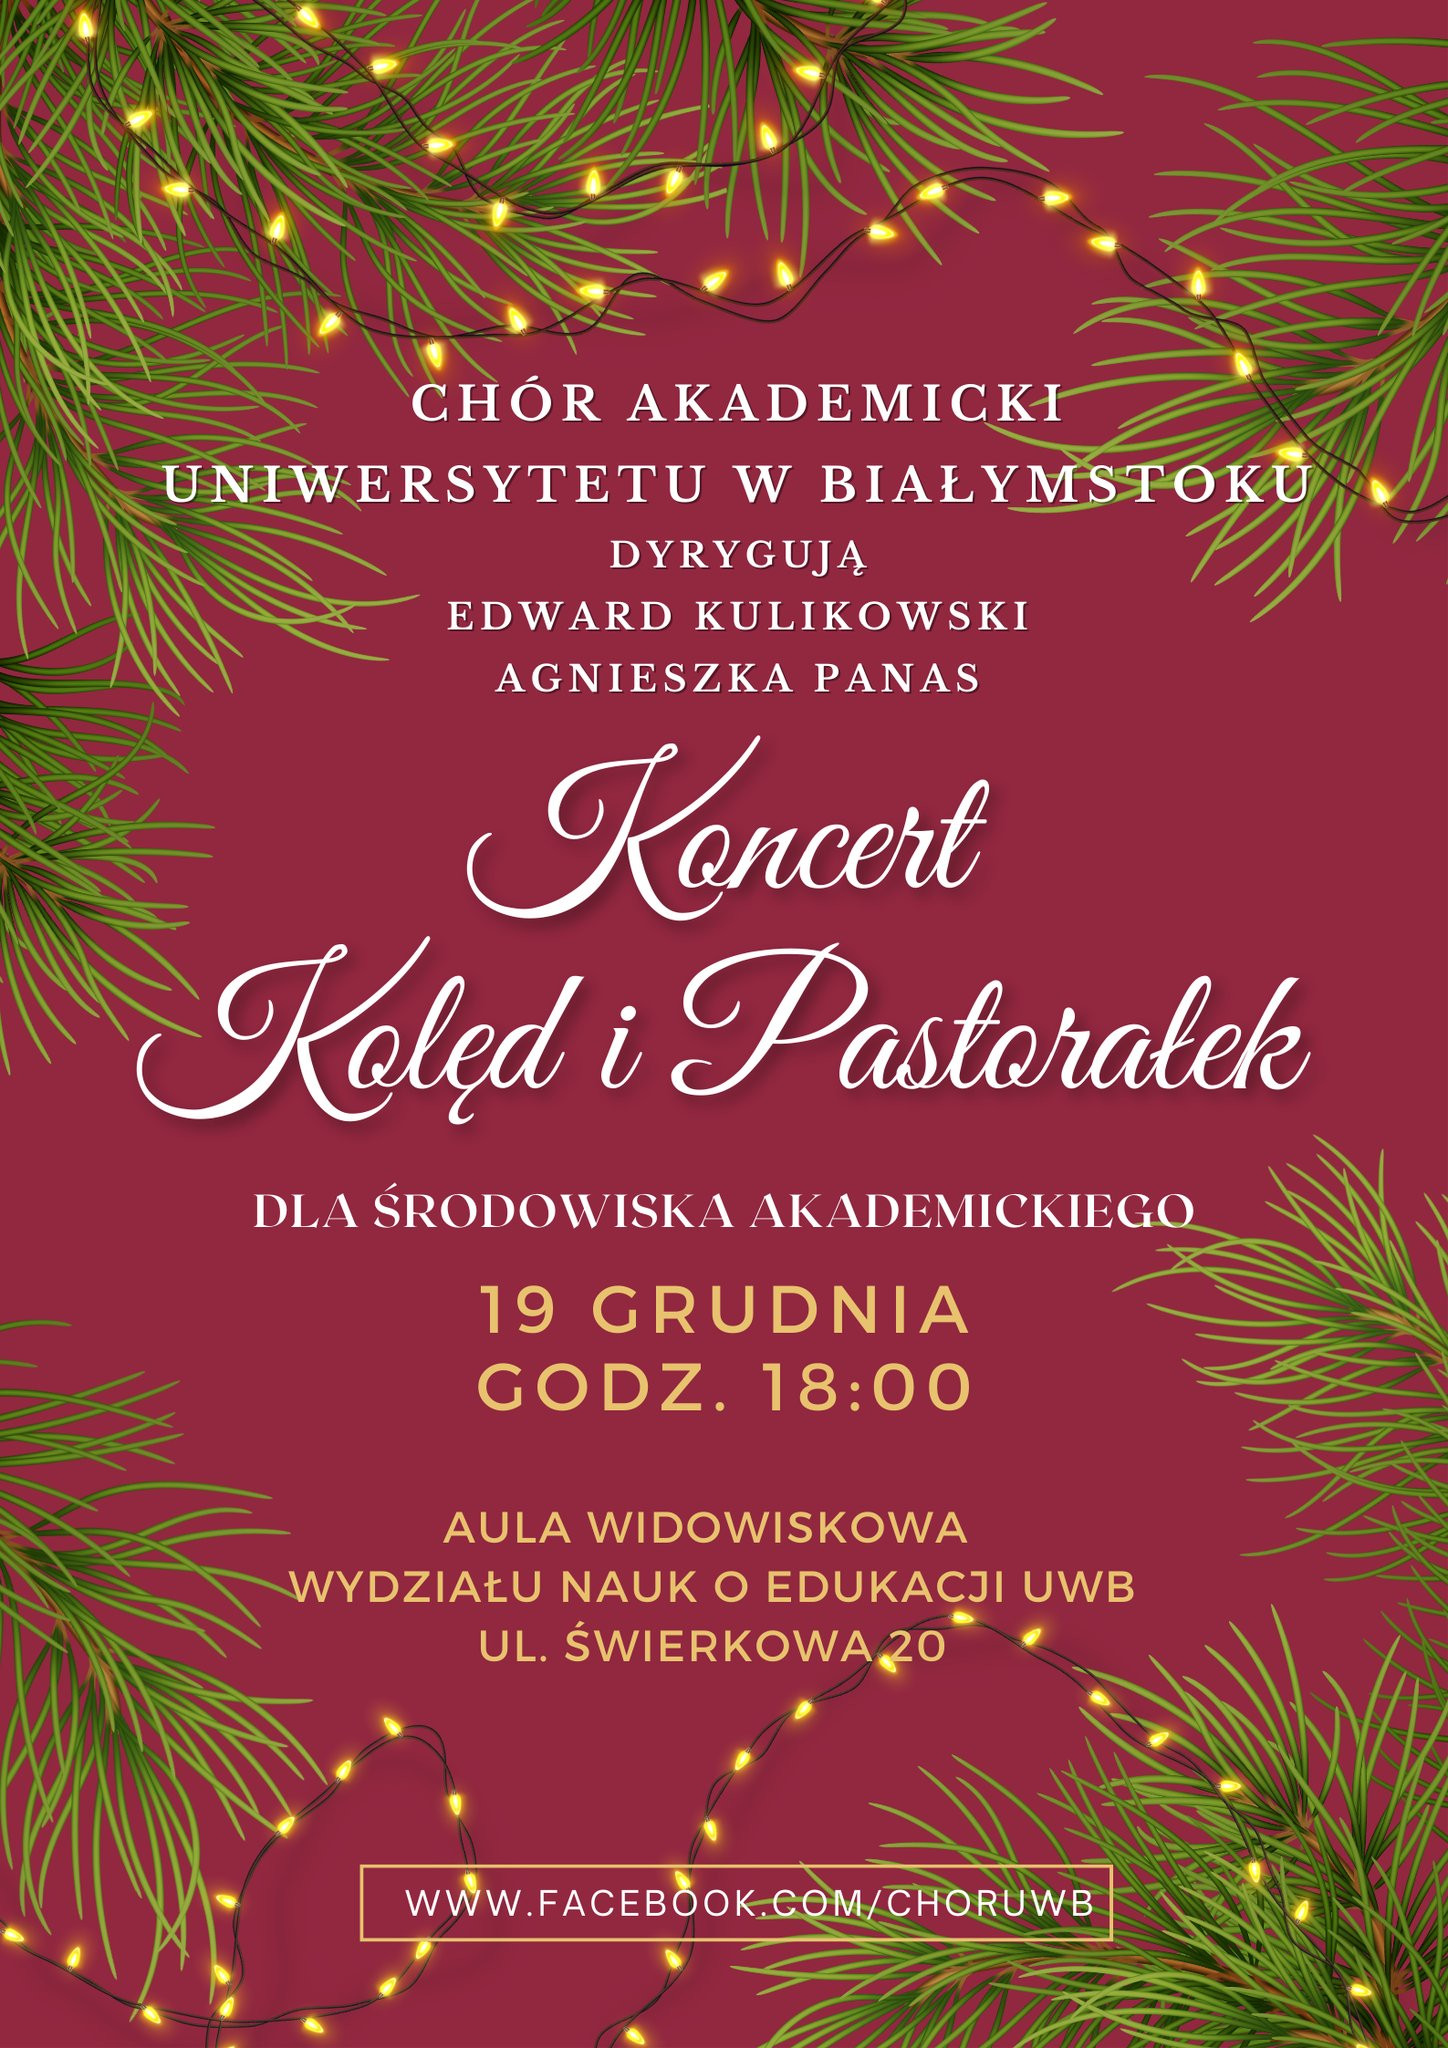 Chór Akademicki Uniwersytetu w Białymstoku zaprasza na Koncert Kolęd i Pastorałek